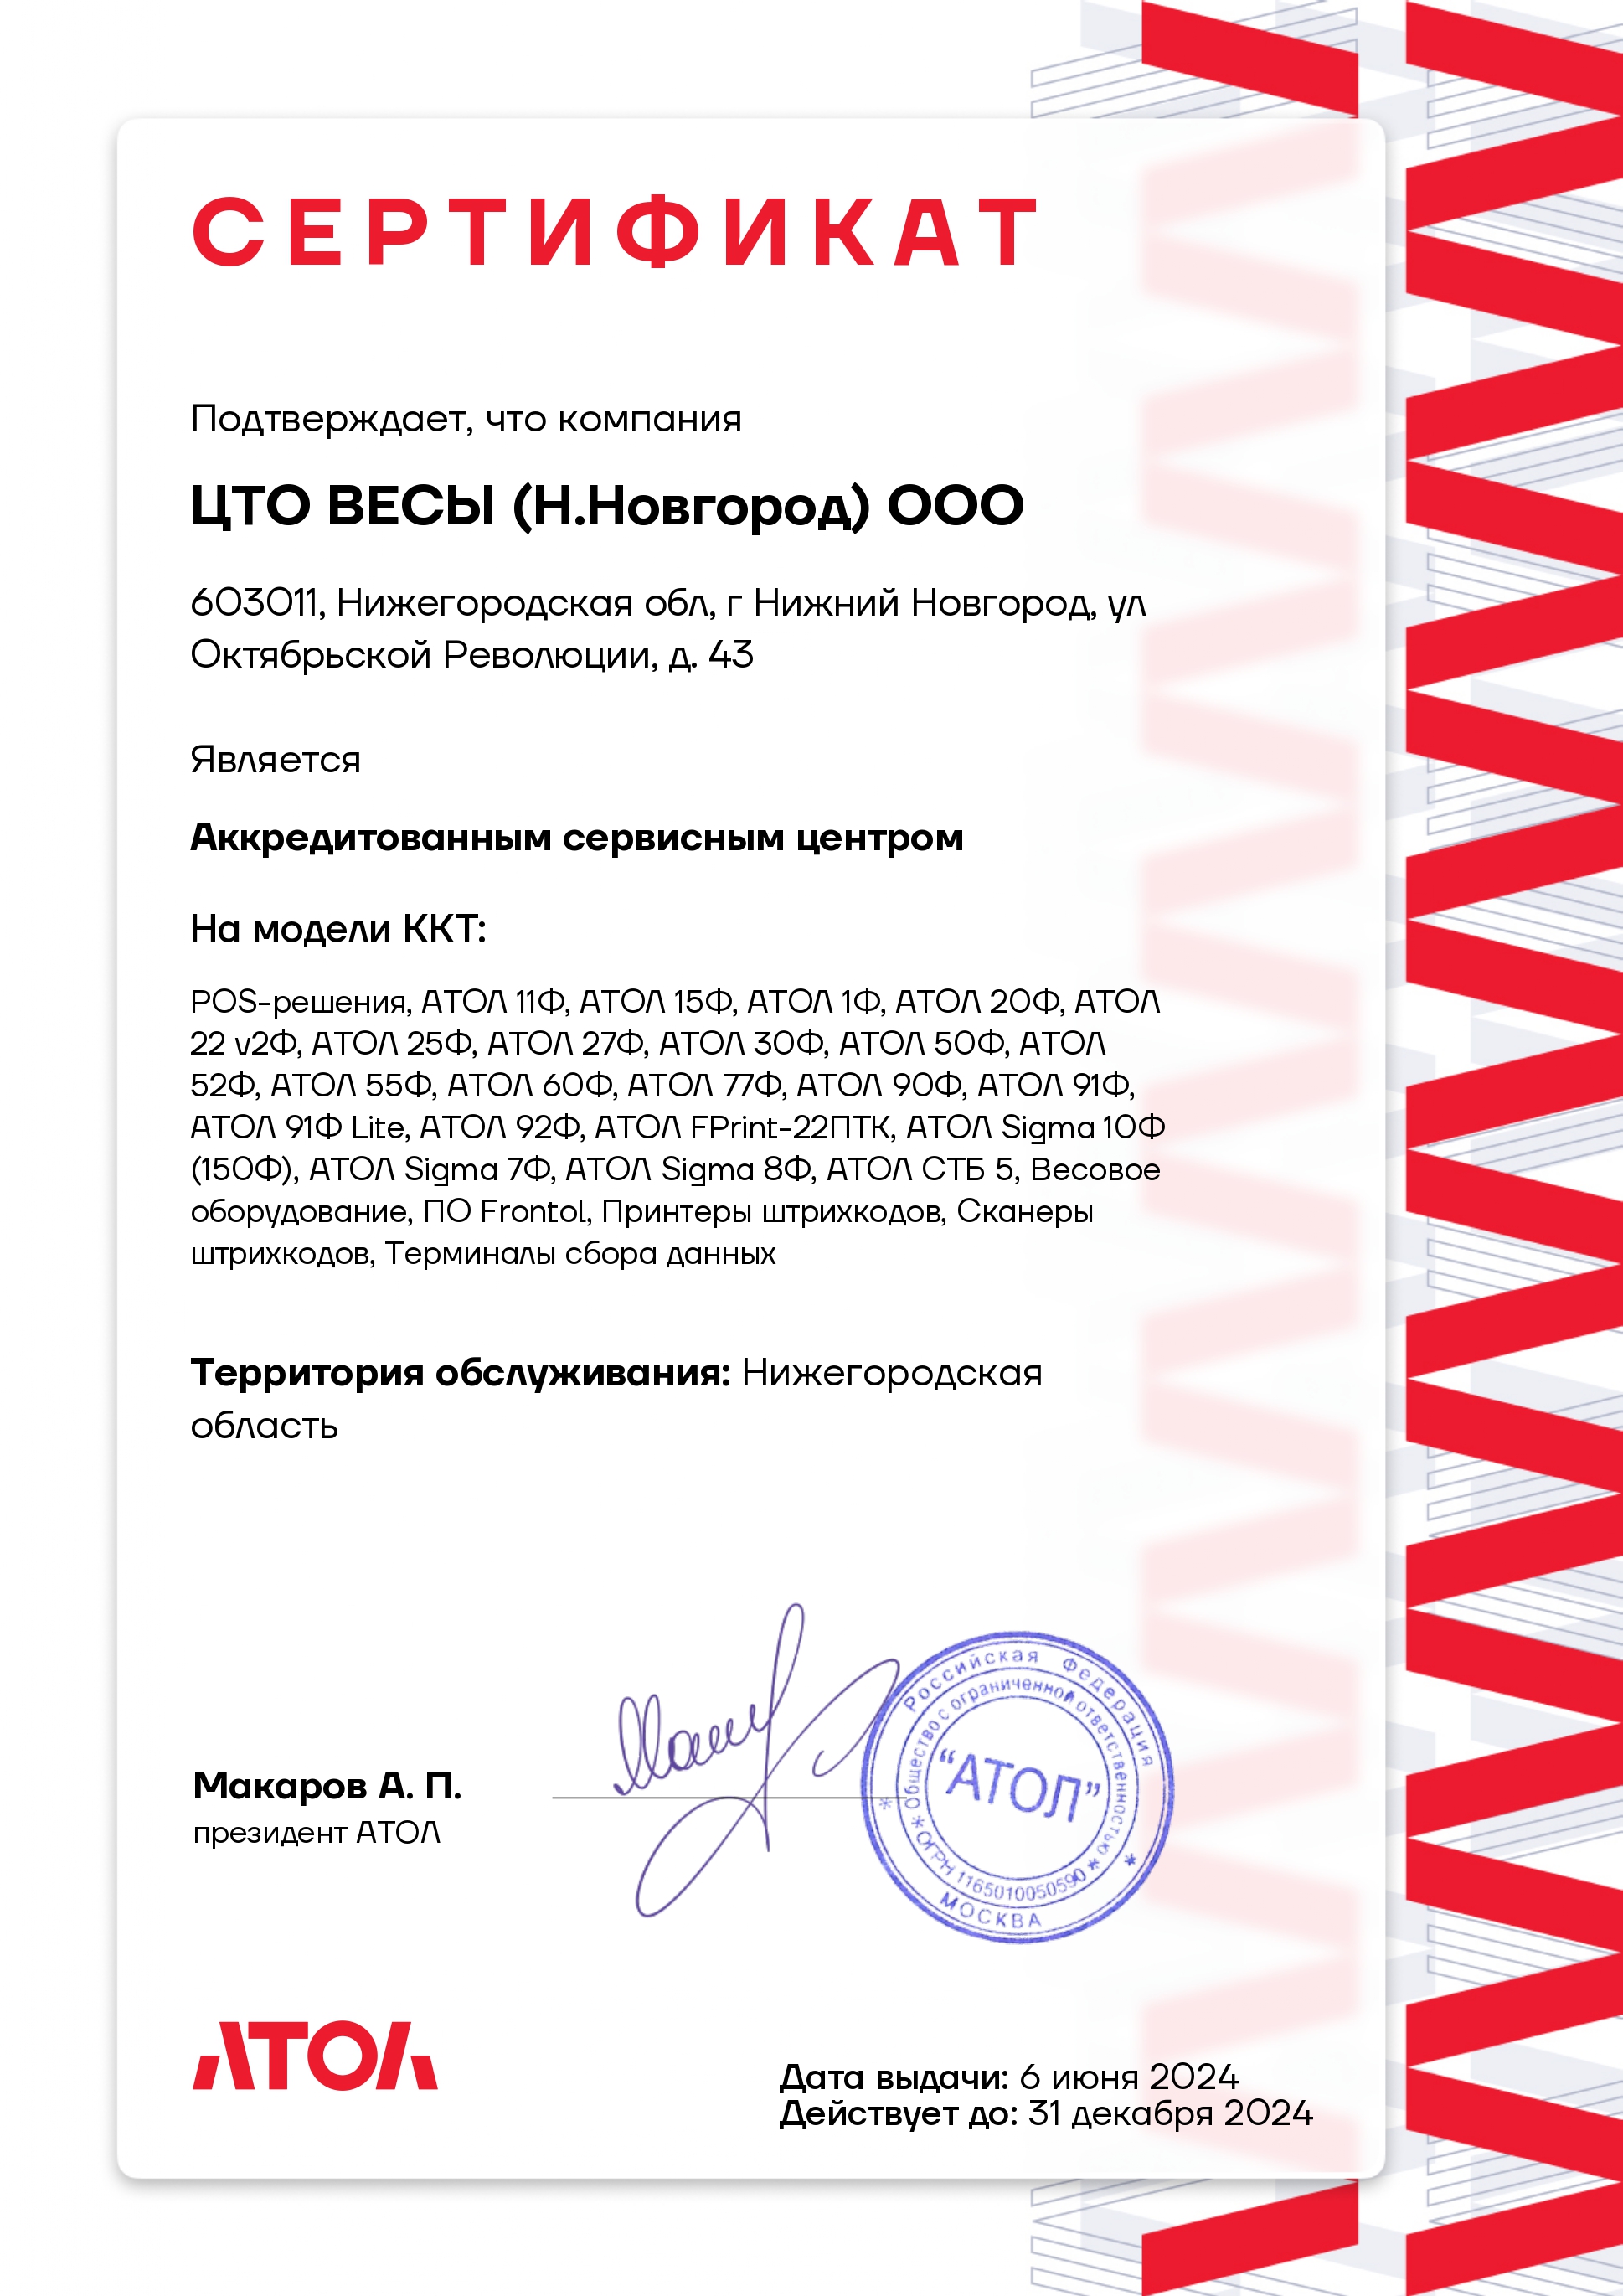 Сертификат АСЦ Атол